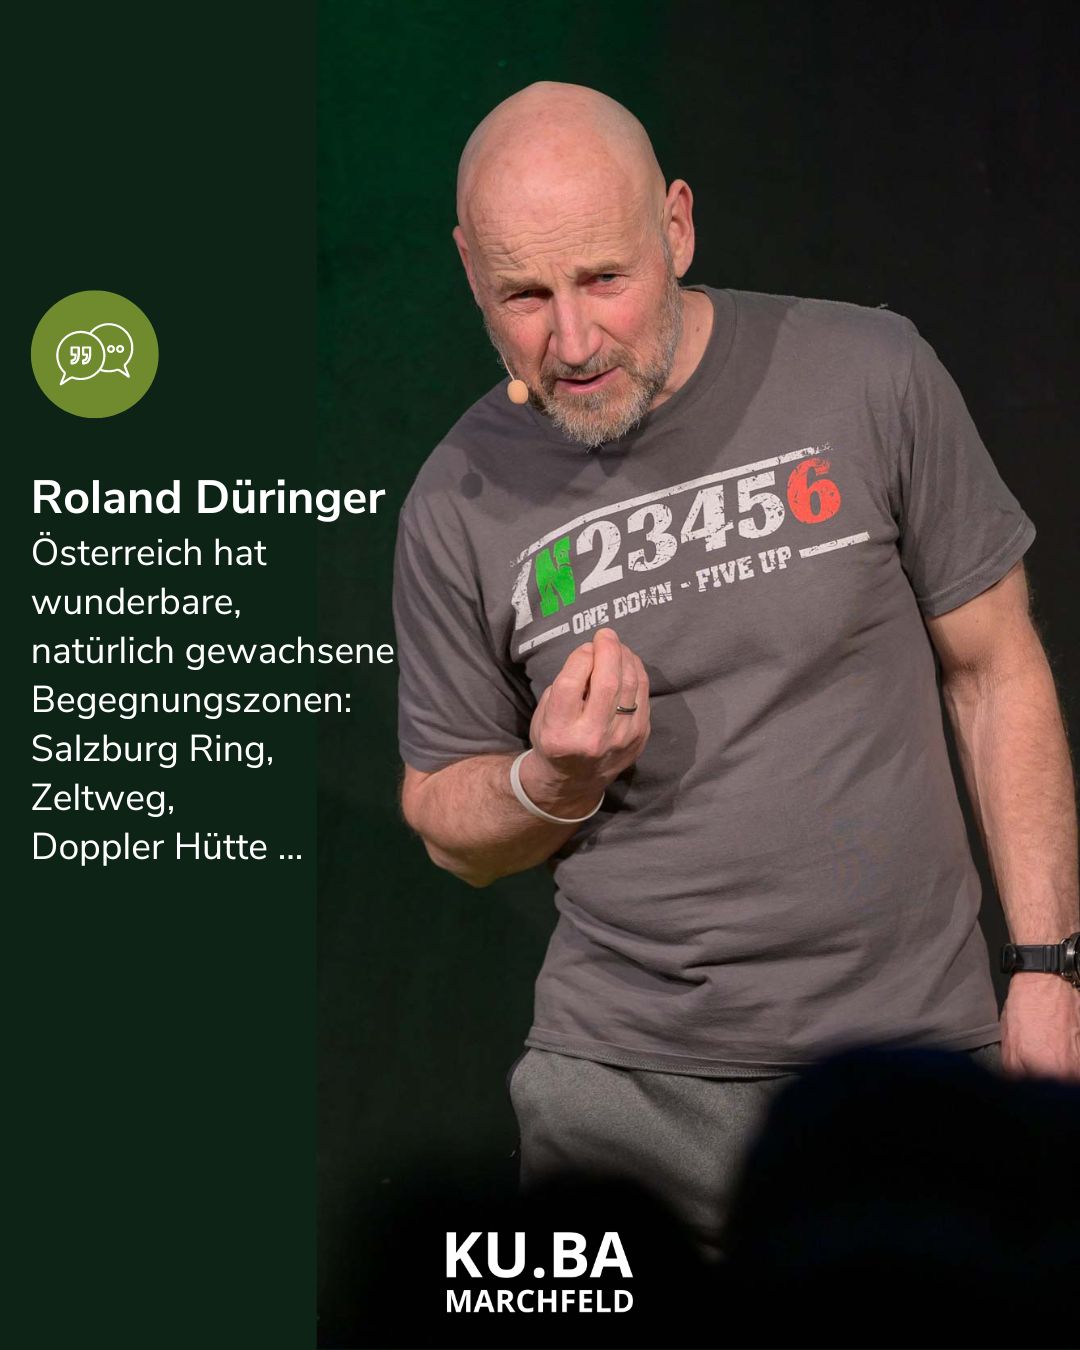 Roland Düringer über Begegnungszonen